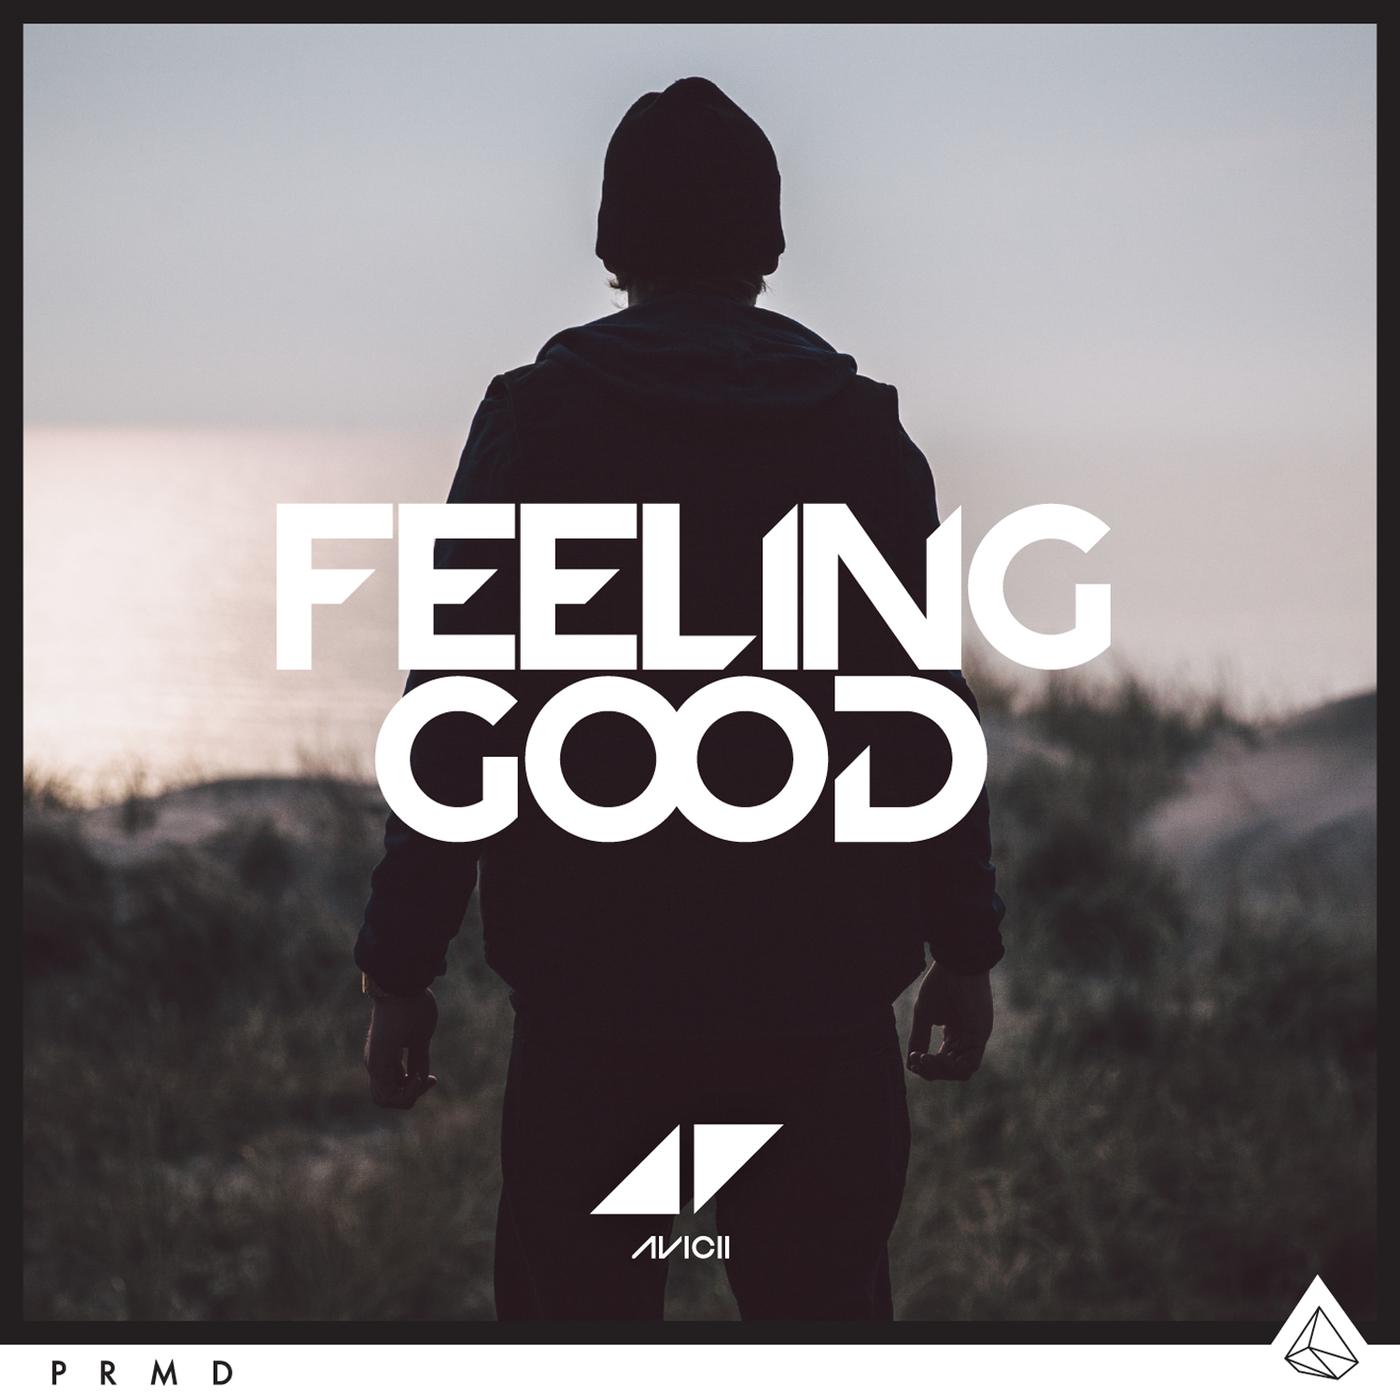 Feelings redfeel. Avicii_feeling good «Single» [2015]. Good feeling. Feeling good обложка. Avicii feeling good обложка.